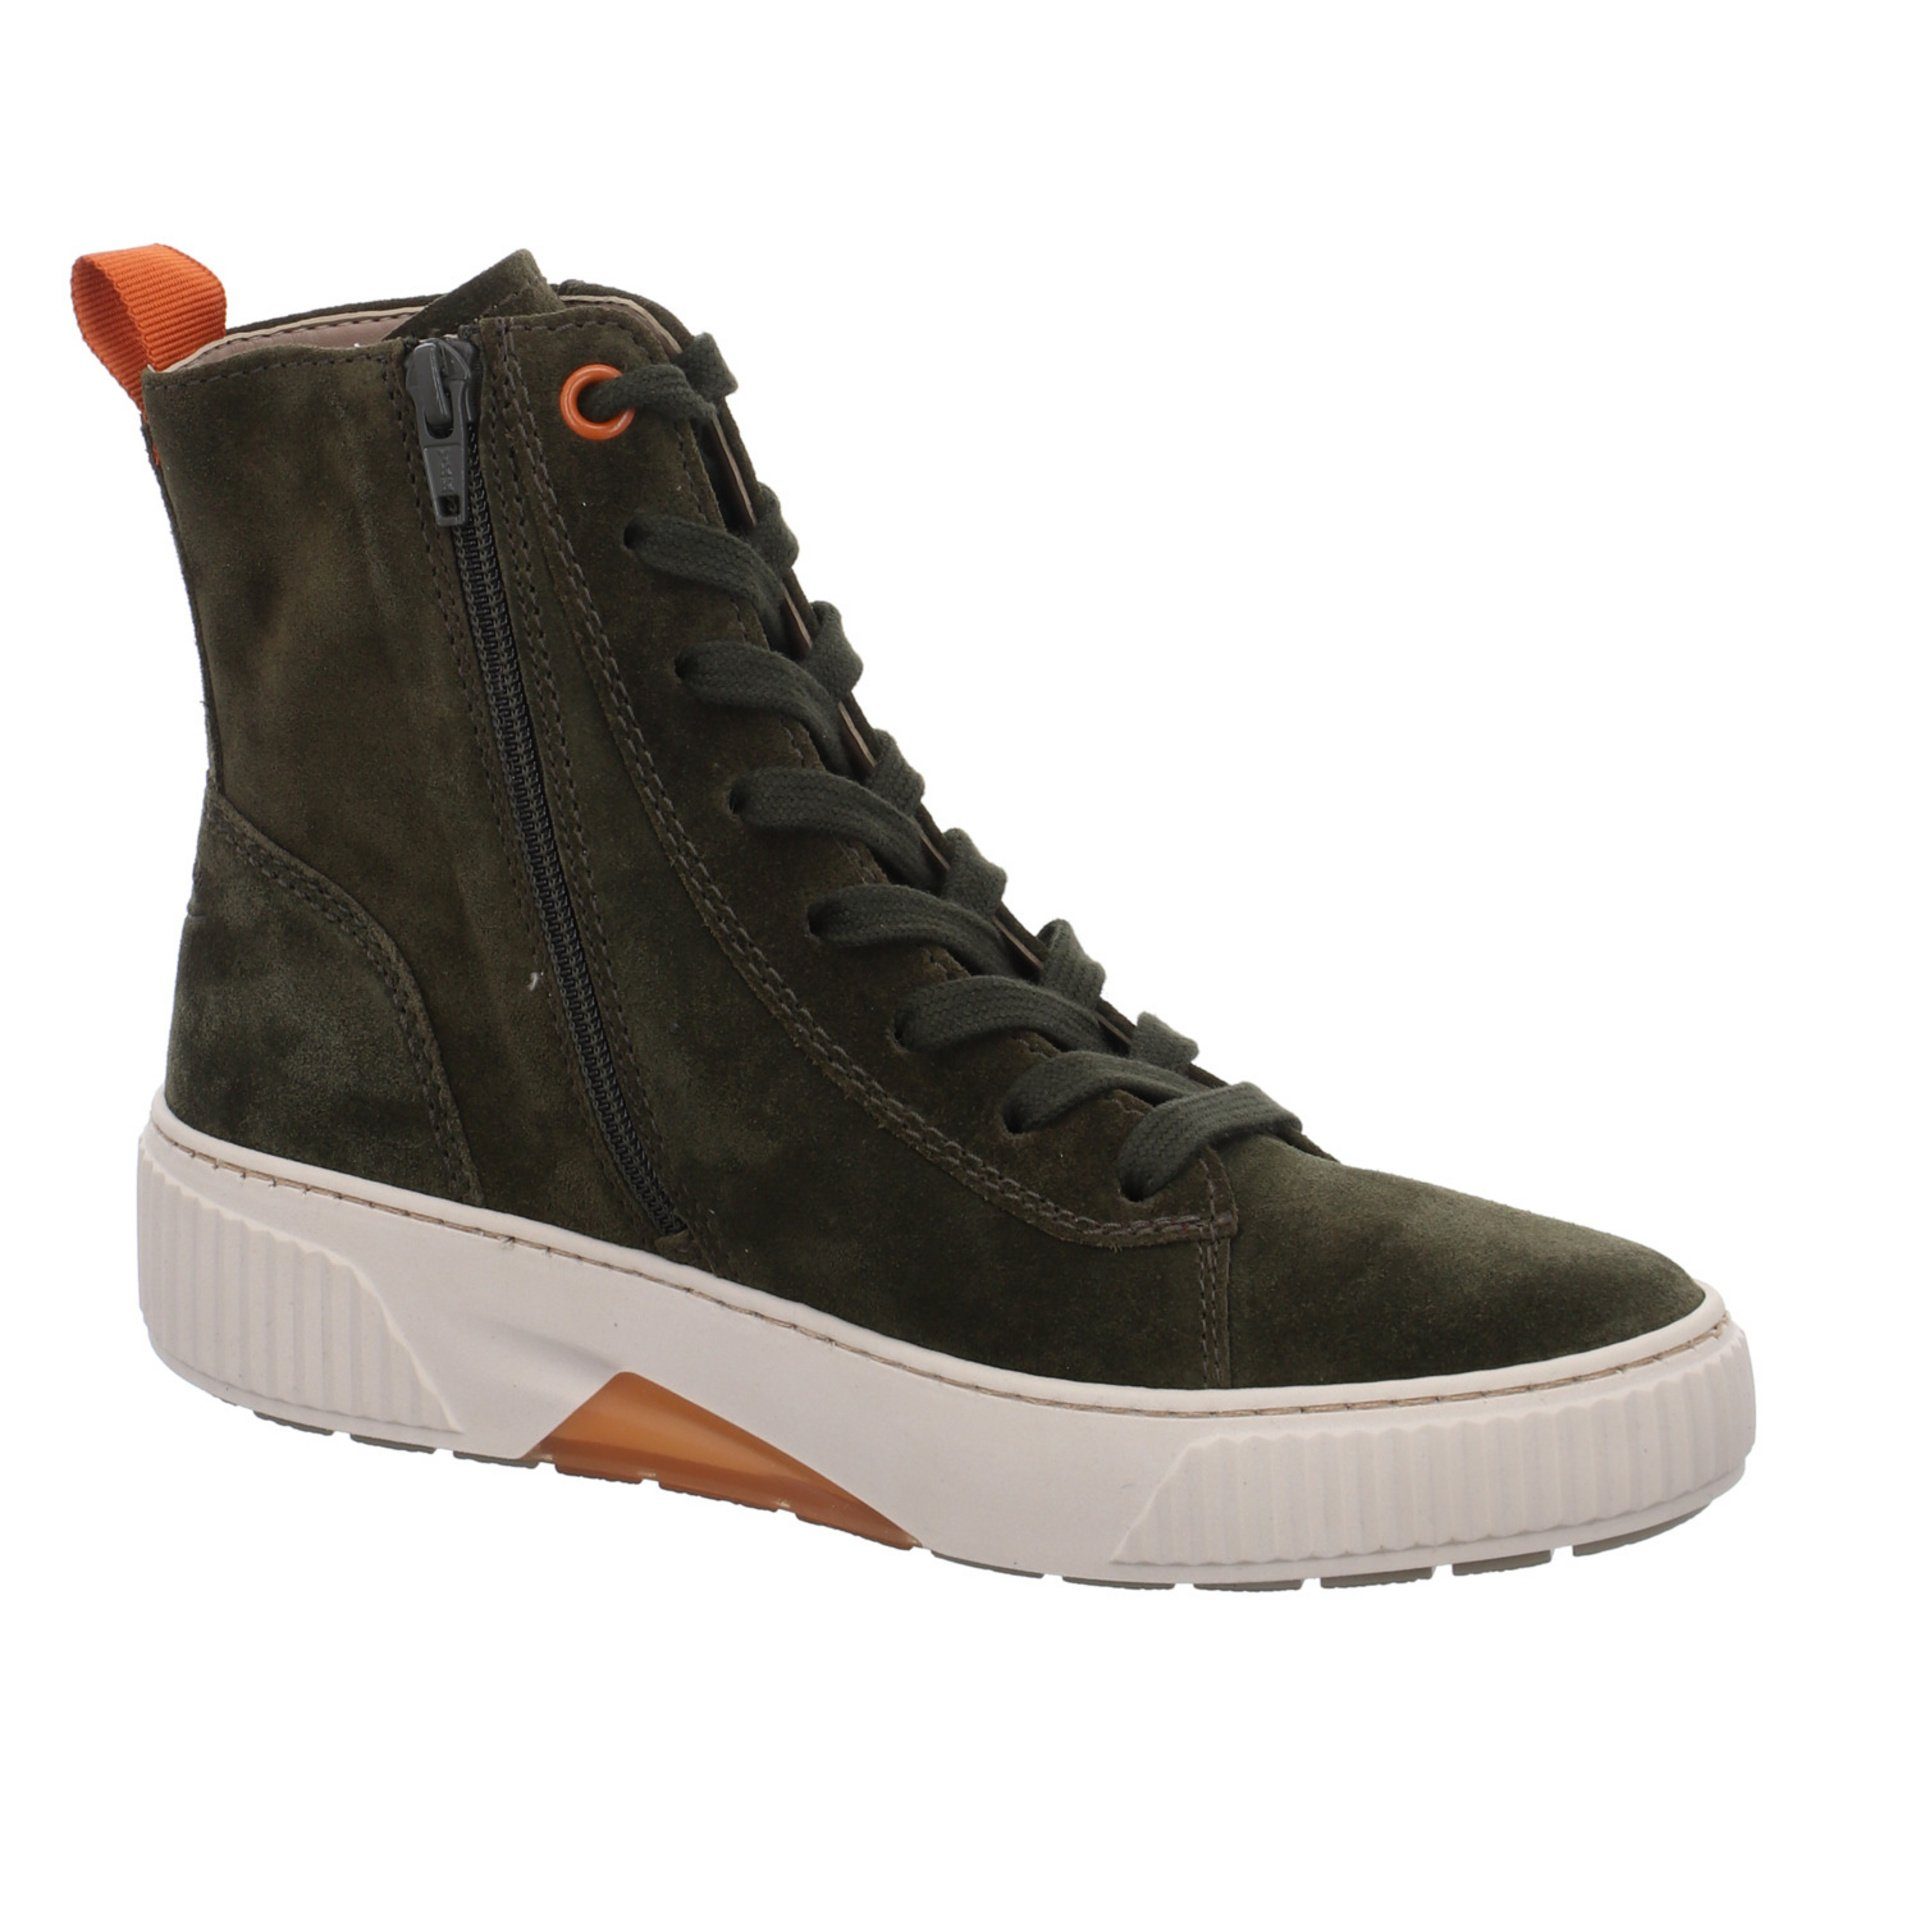 Gabor Damen Stiefel Schuhe Boots (07301826) bosco/orange Elegant Stiefel Klassisch Veloursleder